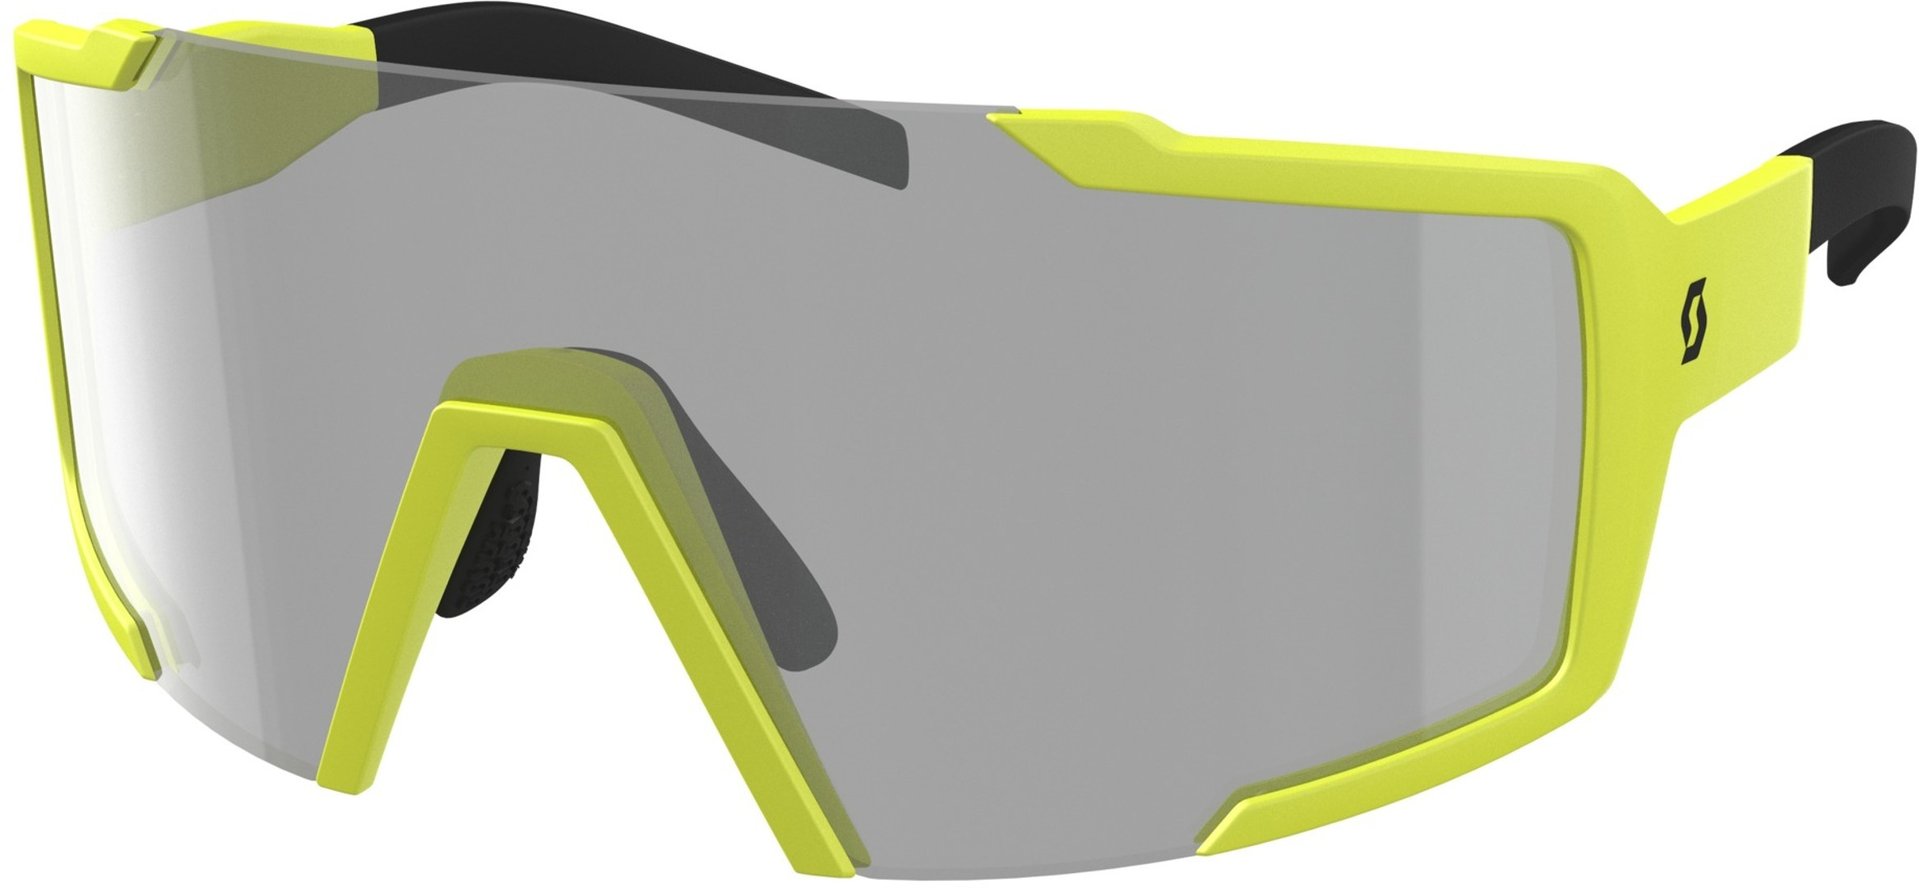 солнцезащитные очки waldberg желтый Солнцезащитные очки Scott Shield LS с регулируемой носовой накладкой, желтый/серый